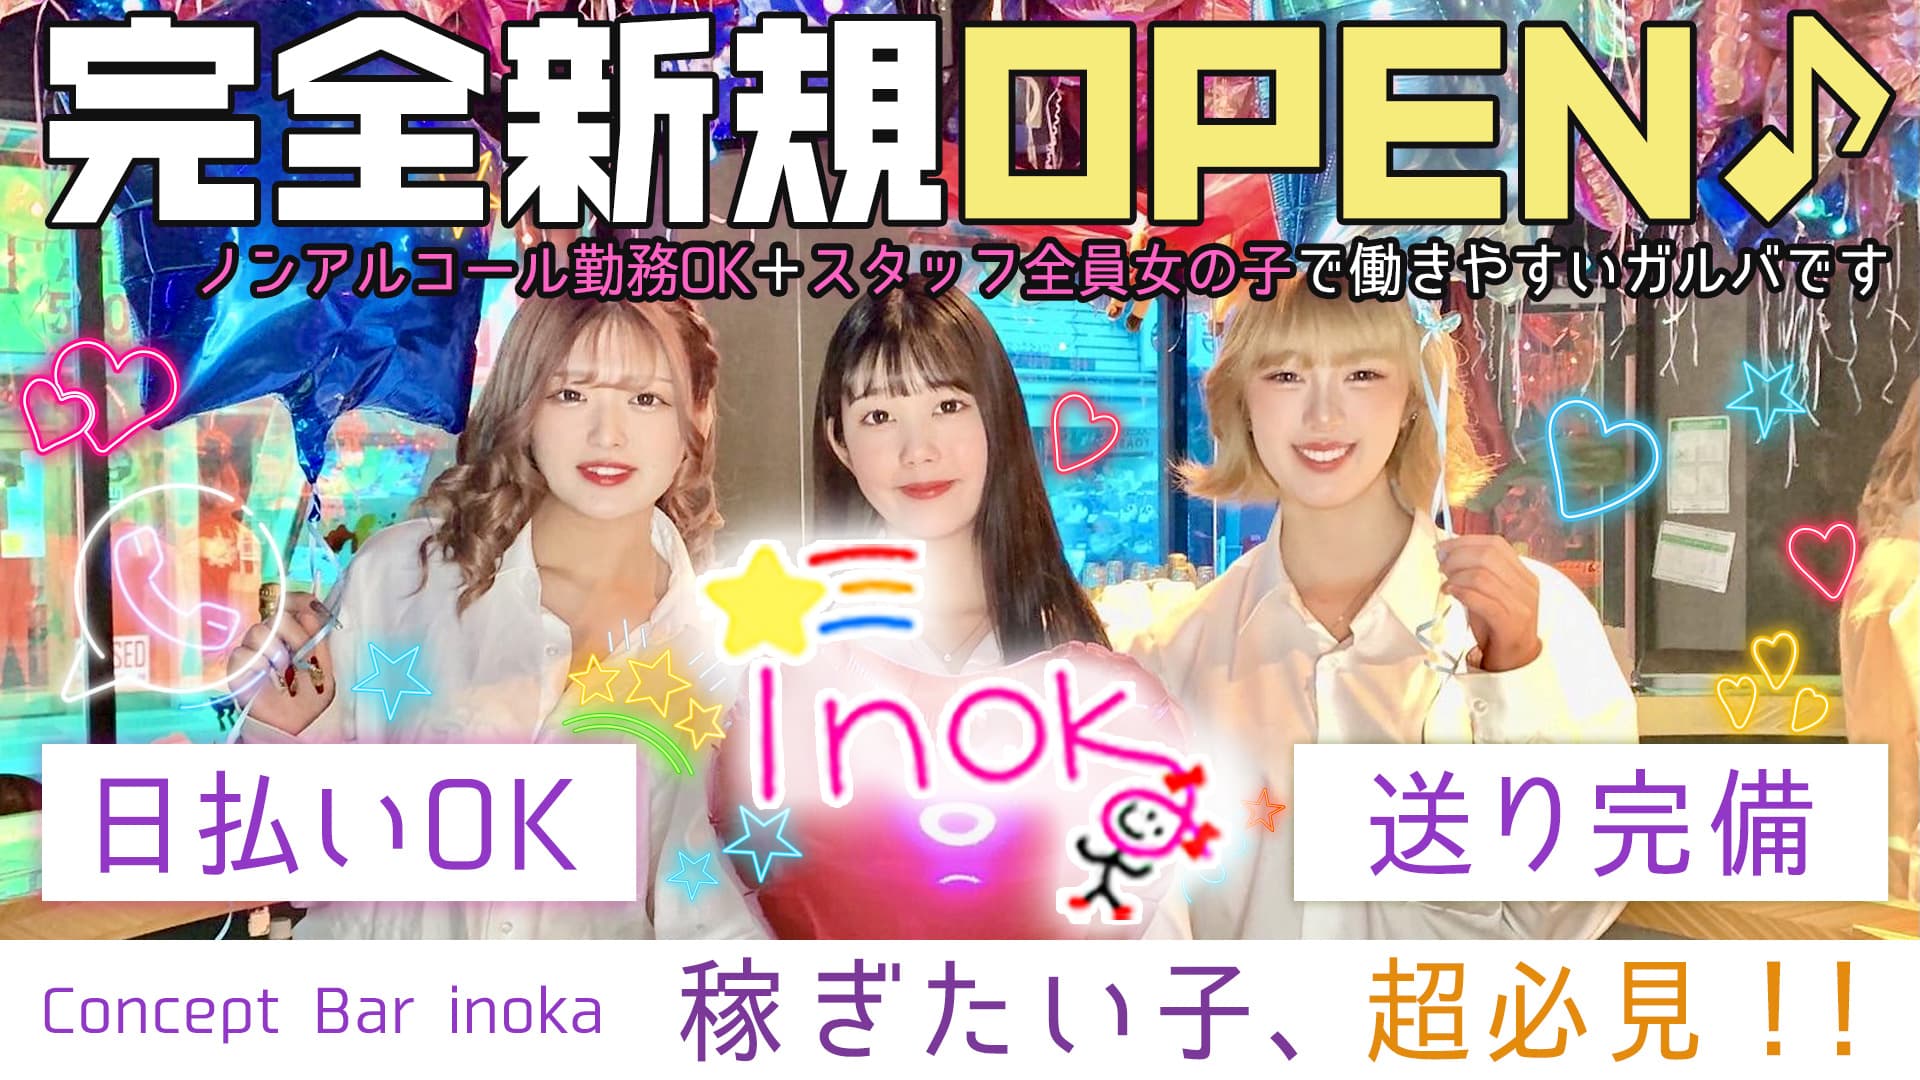 【昼・夜】Concept Bar inoka(イノカ)【公式求人・体入情報】 歌舞伎町ガールズバー TOP画像